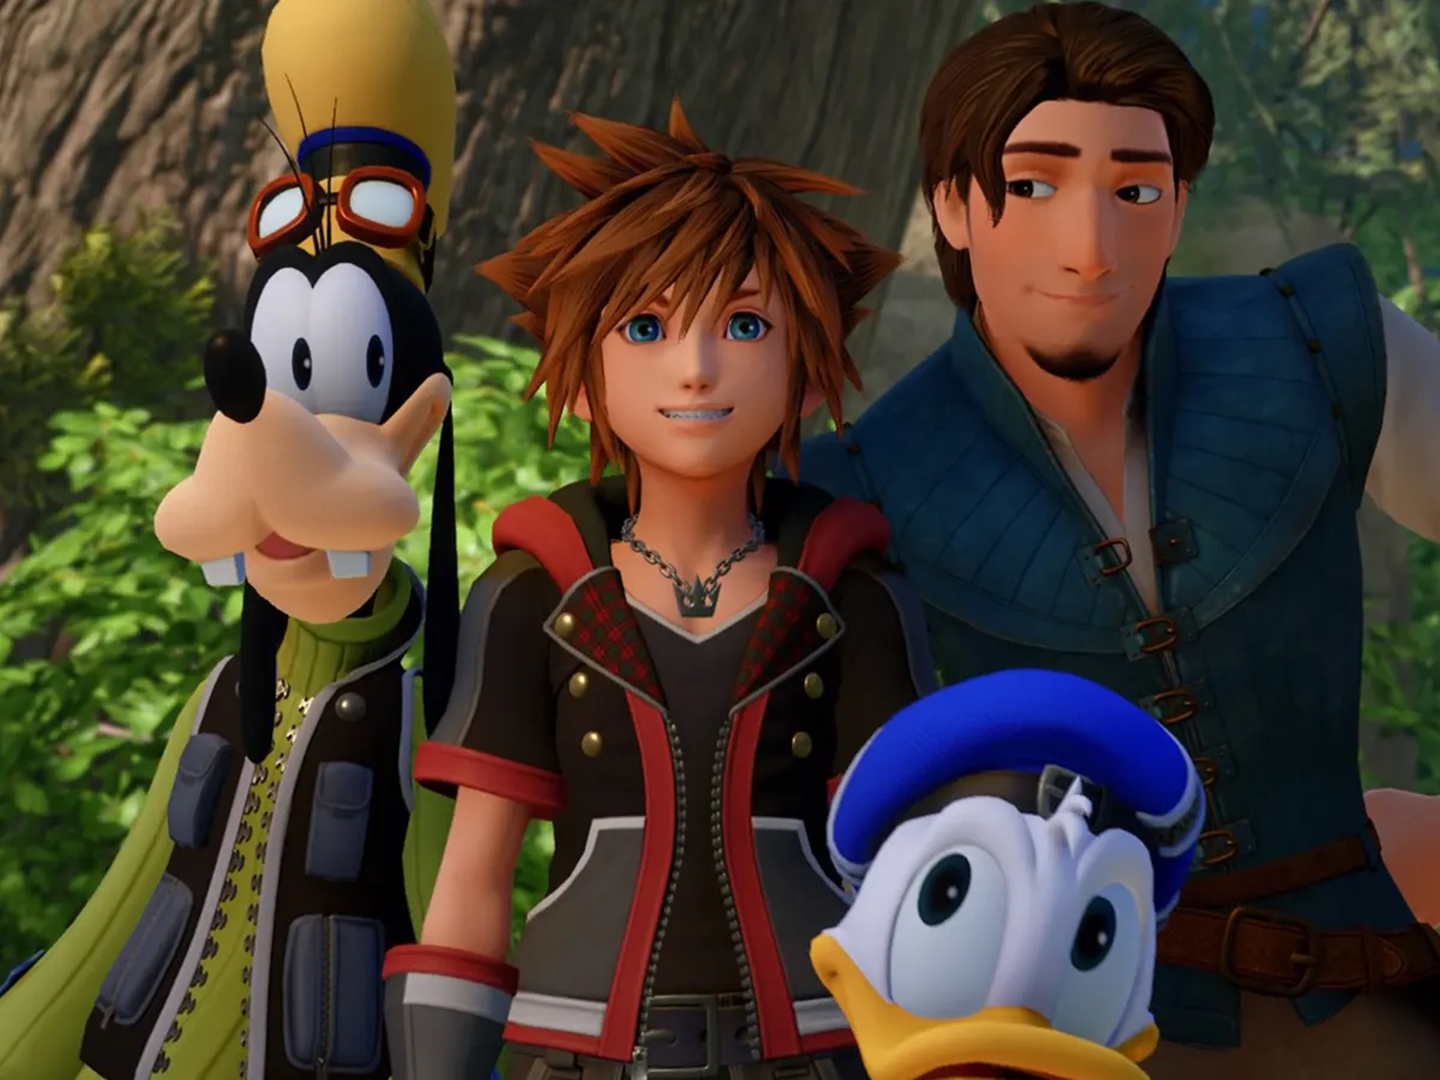 Square Enix estaria trabalhando em uma suposta adaptação de Kingdom Hearts para a TV ou cinema.